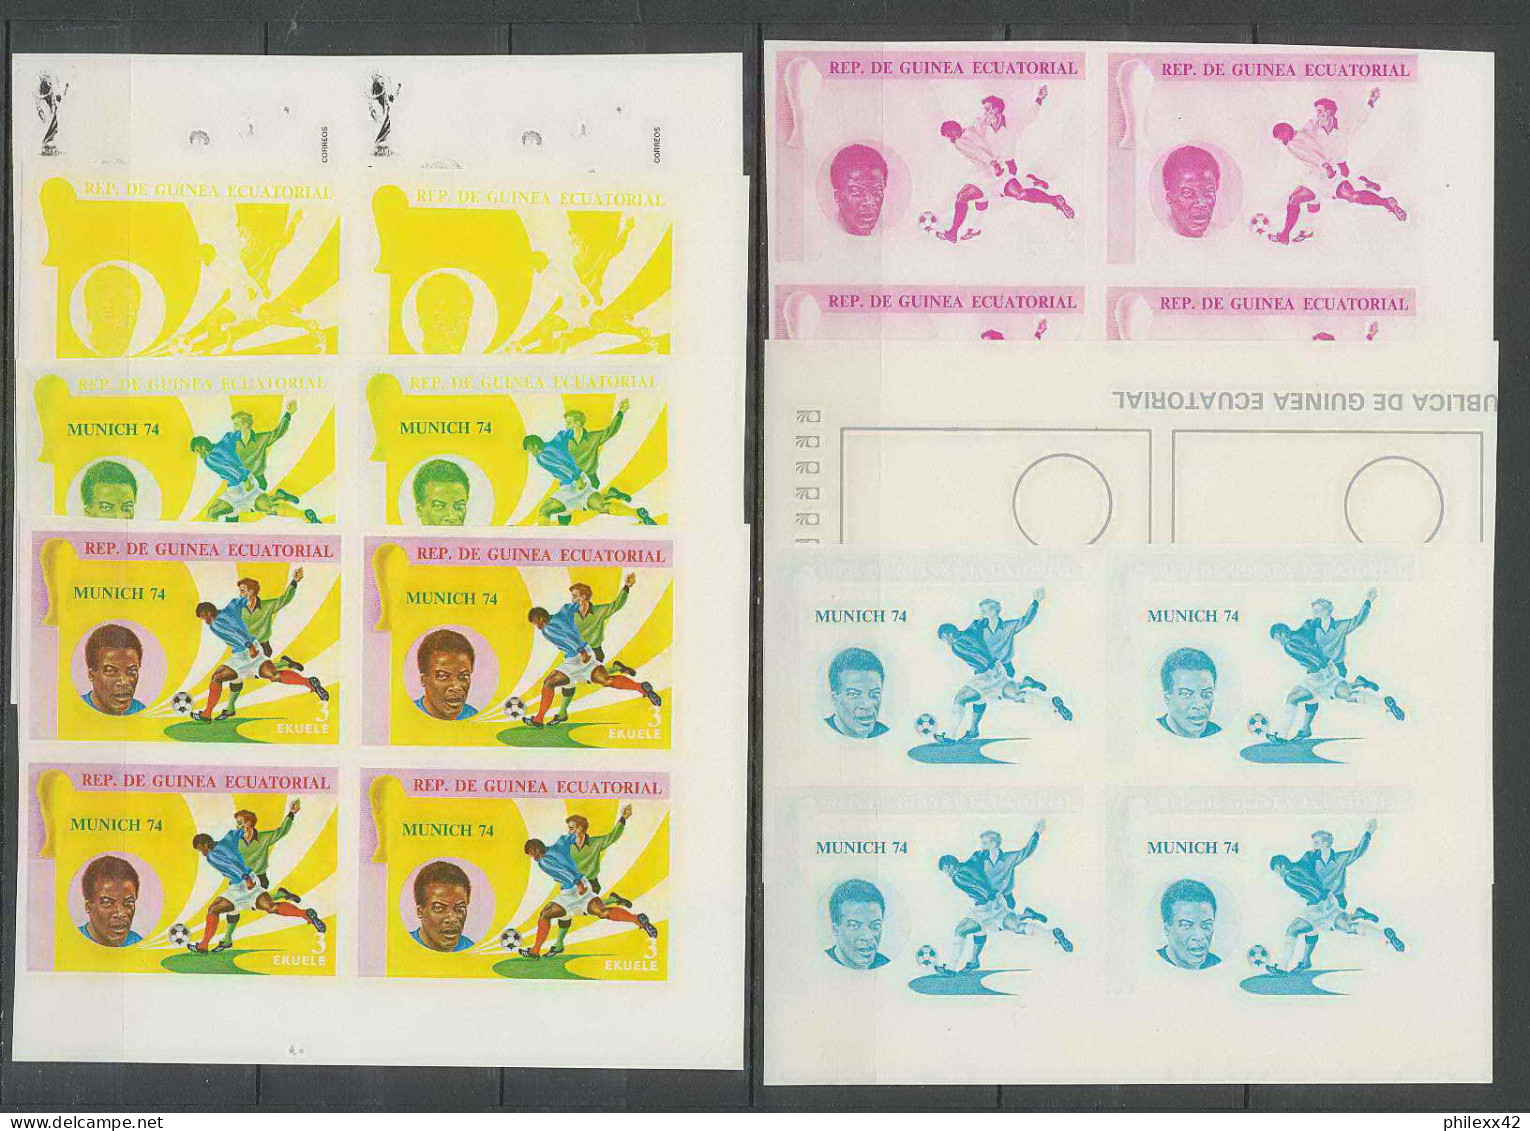 Guinée équatoriale guinea 423c N°371/379 Football Soccer Essai proof Non dentelé imperf orate Bloc 4 252 timbres